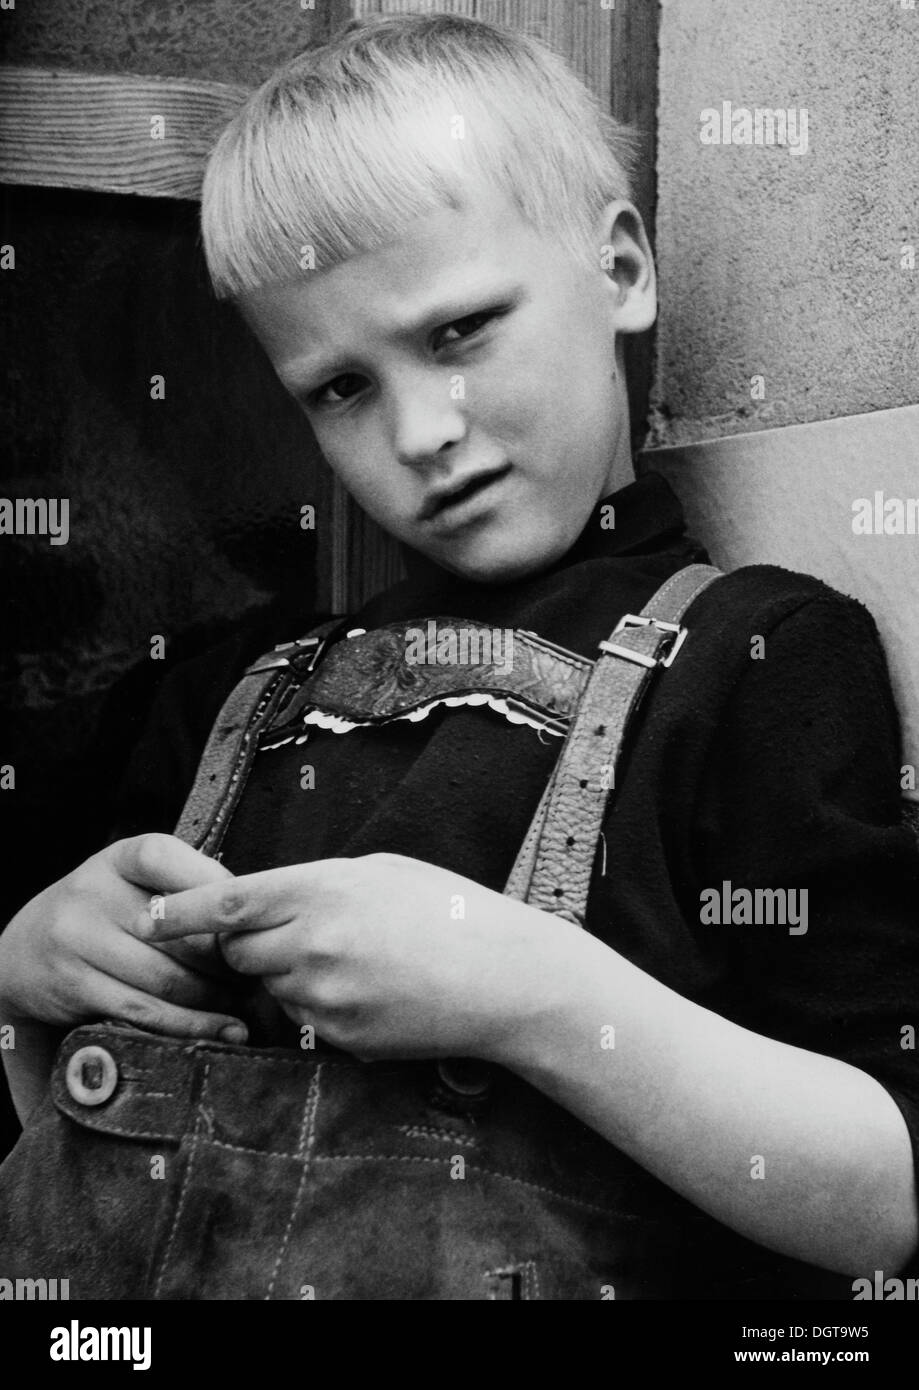 Jeune garçon portant des pantalons en cuir traditionnel, lederhosen, environ 9 ans, l'Allemagne de l'Est, autour de 1972 Banque D'Images